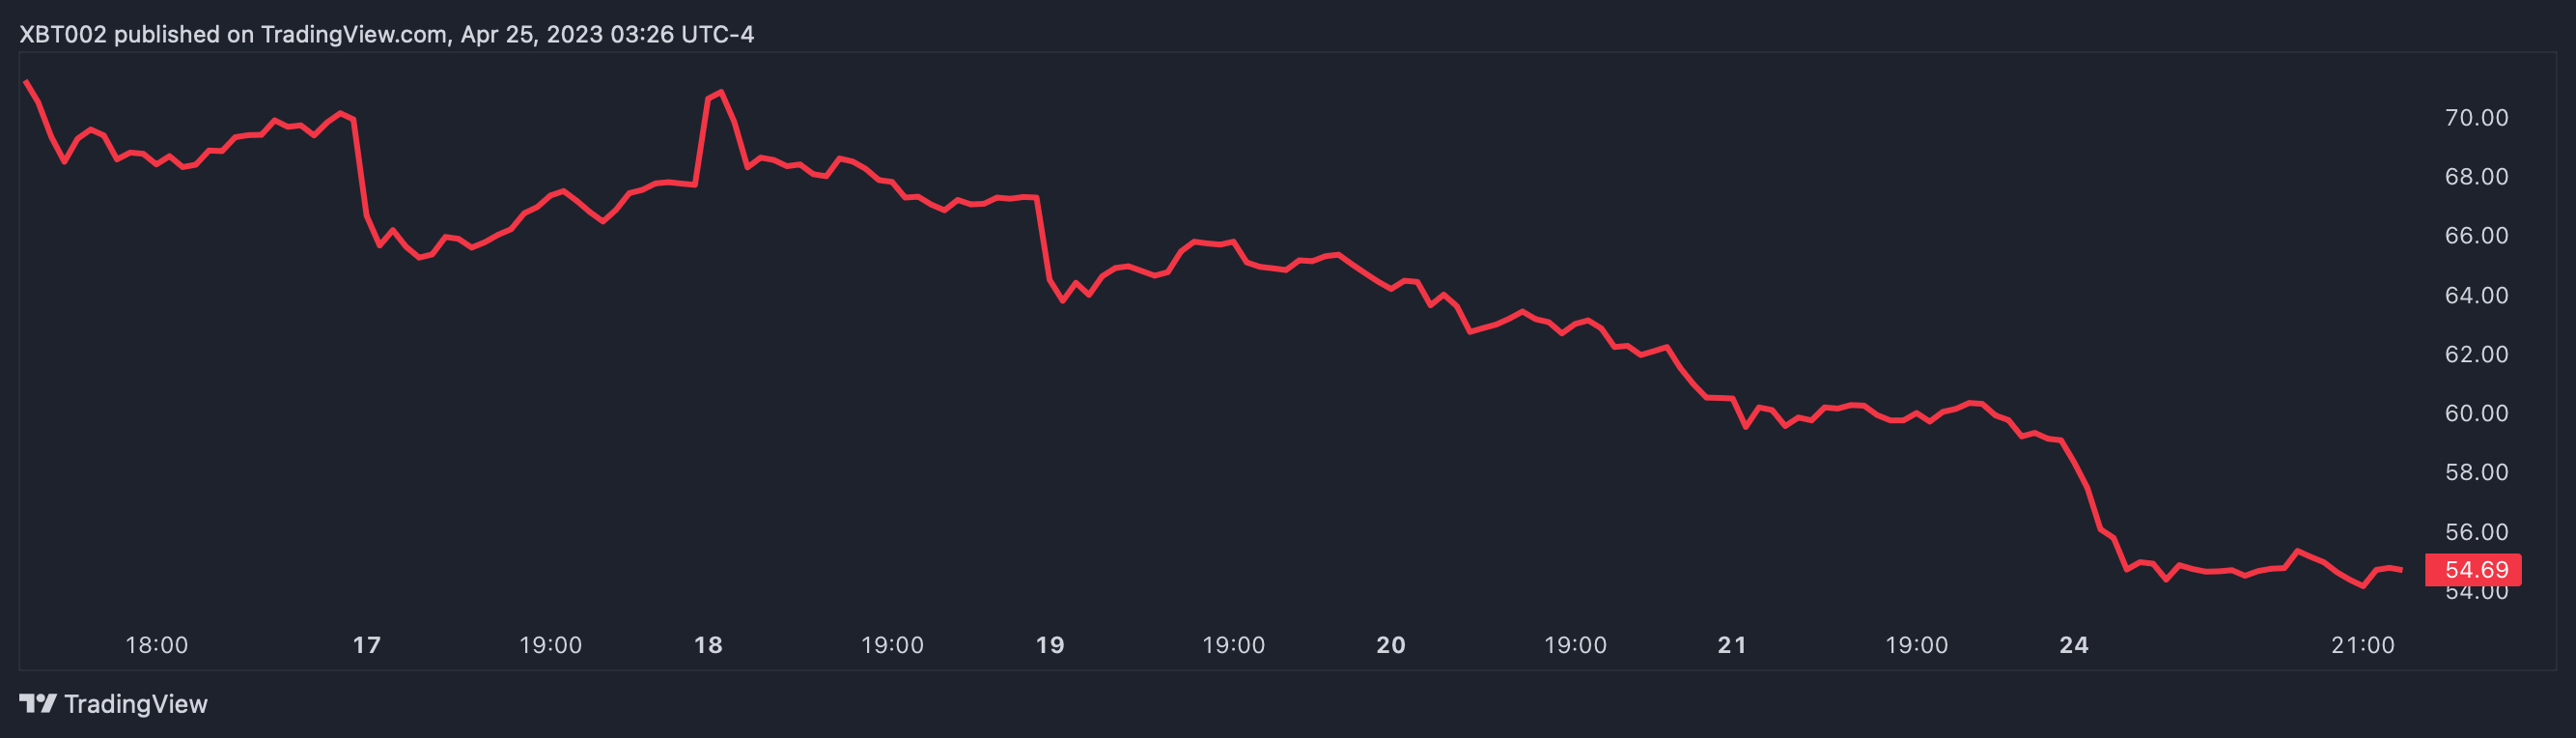 график tradeview, показывающий цену Coinbase запас